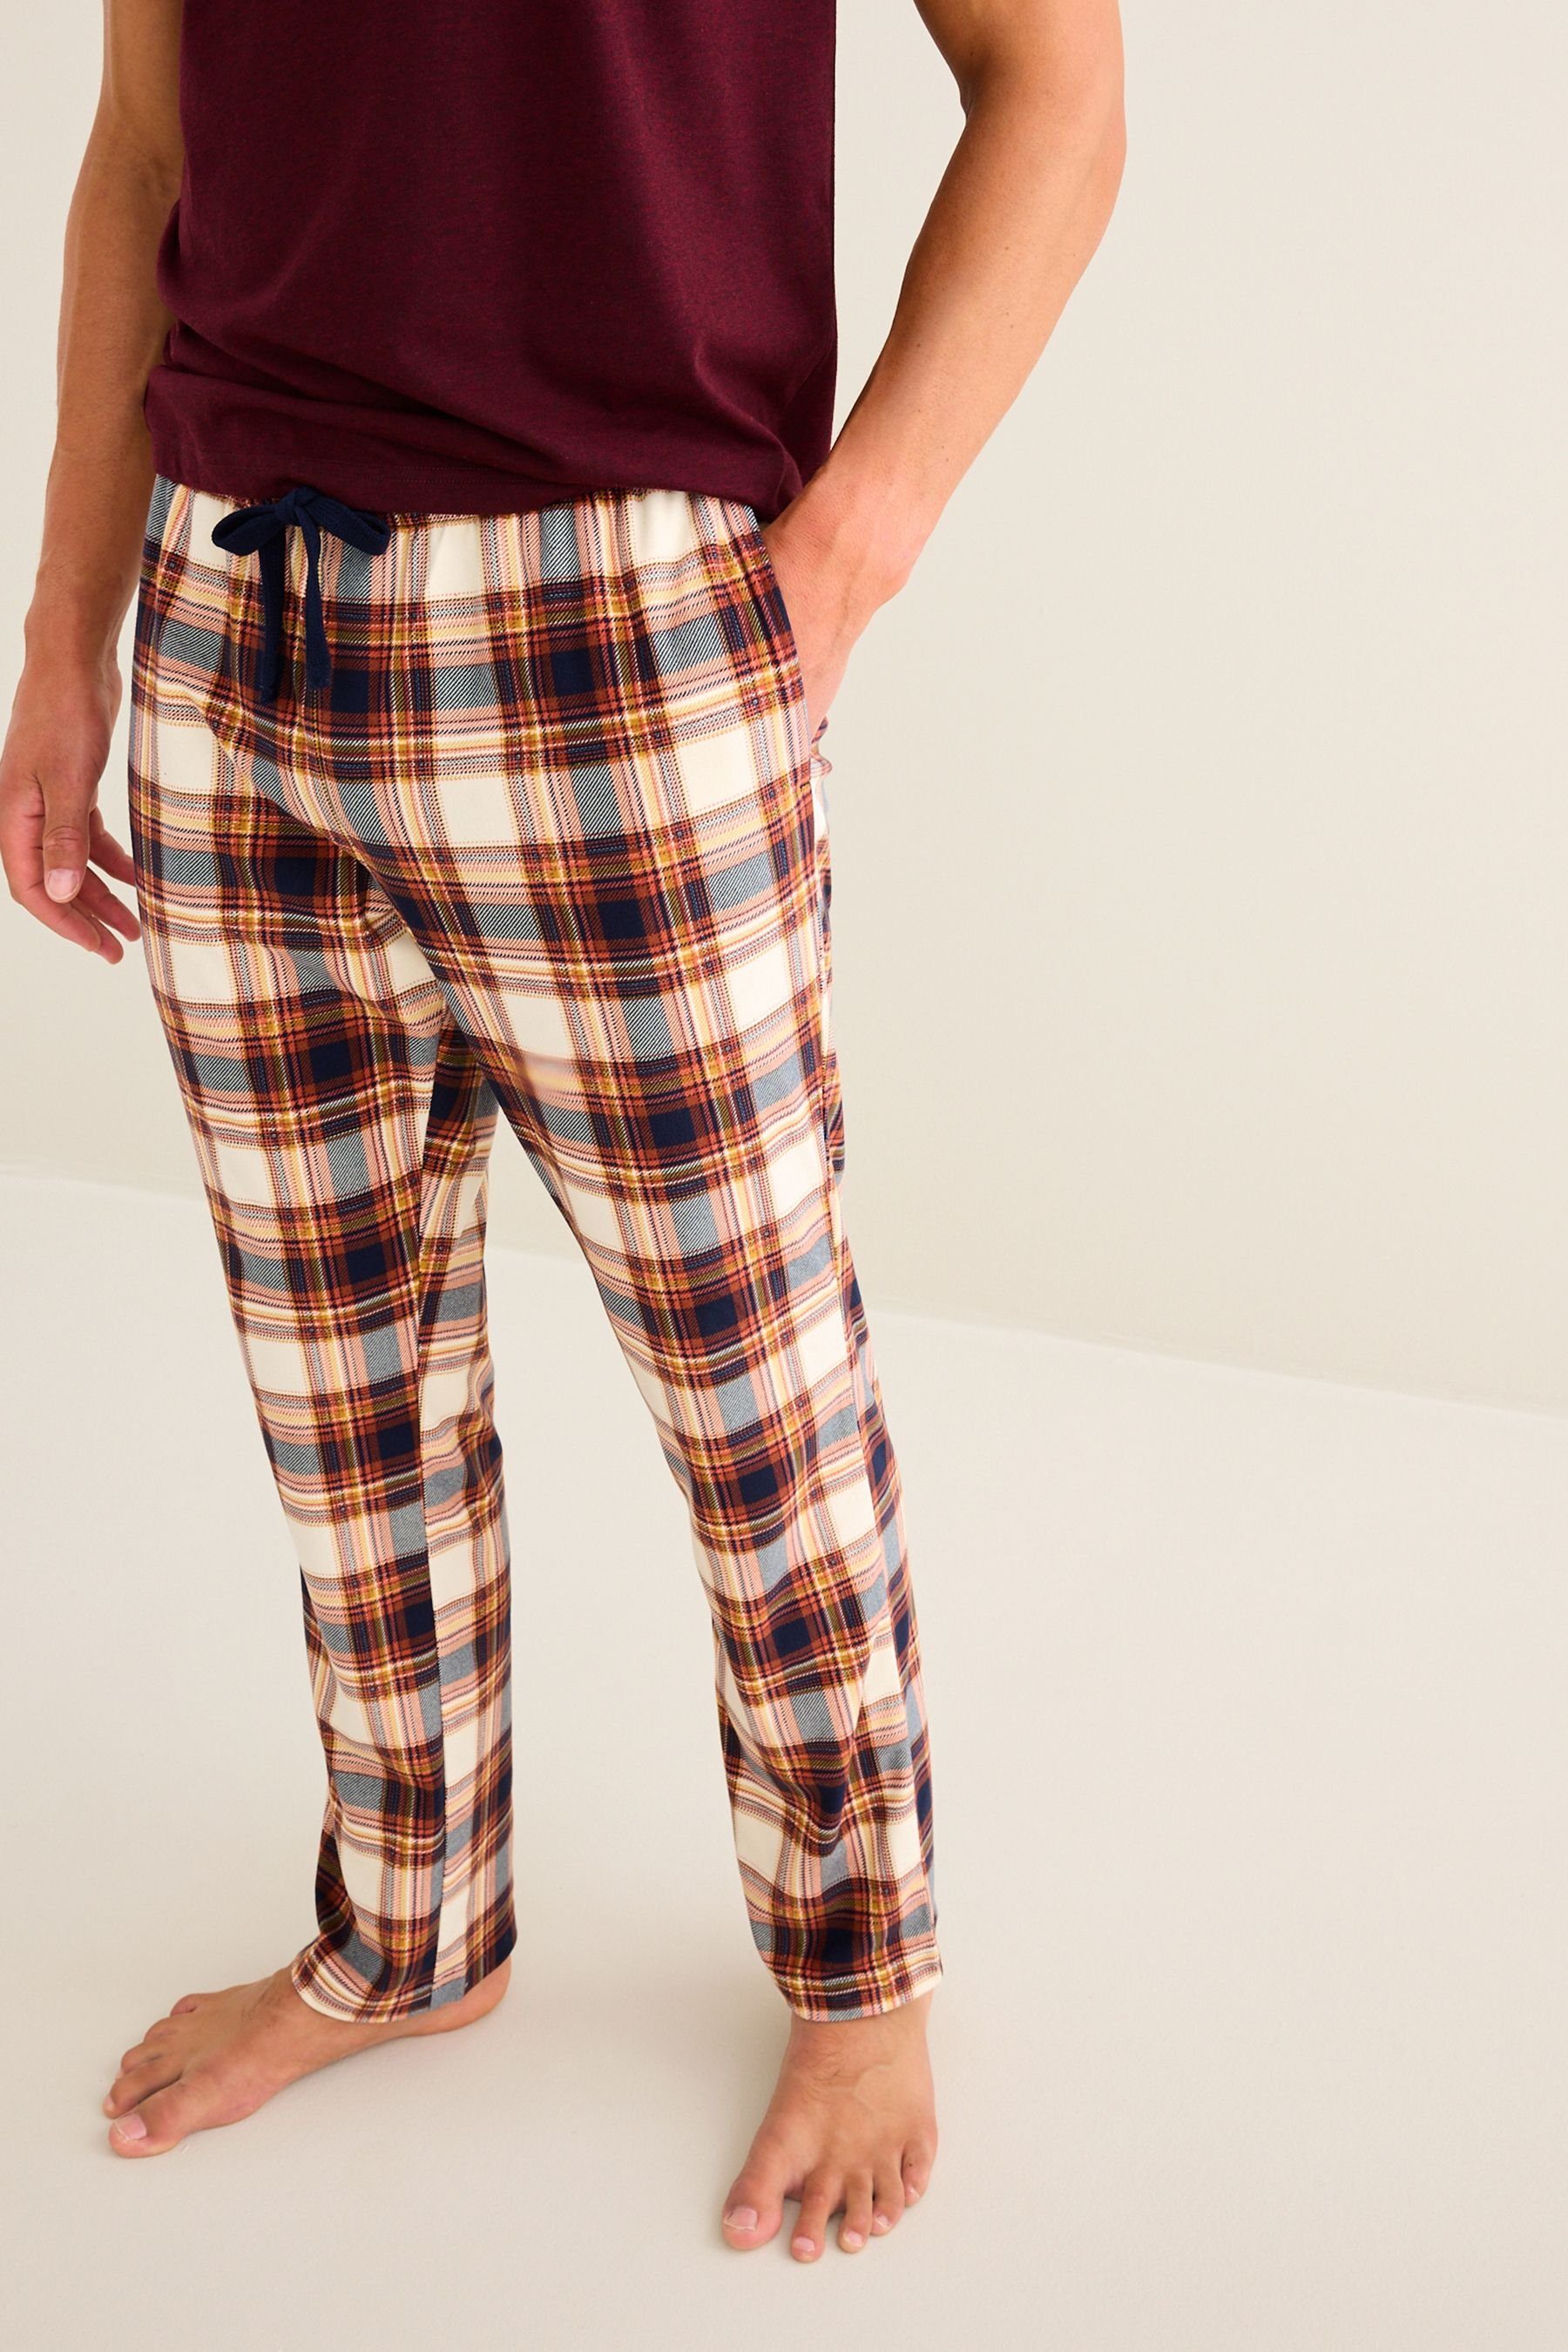 Motionflex (2 Bequemer tlg) Check Red/Natural Next Pyjama Schlafanzug